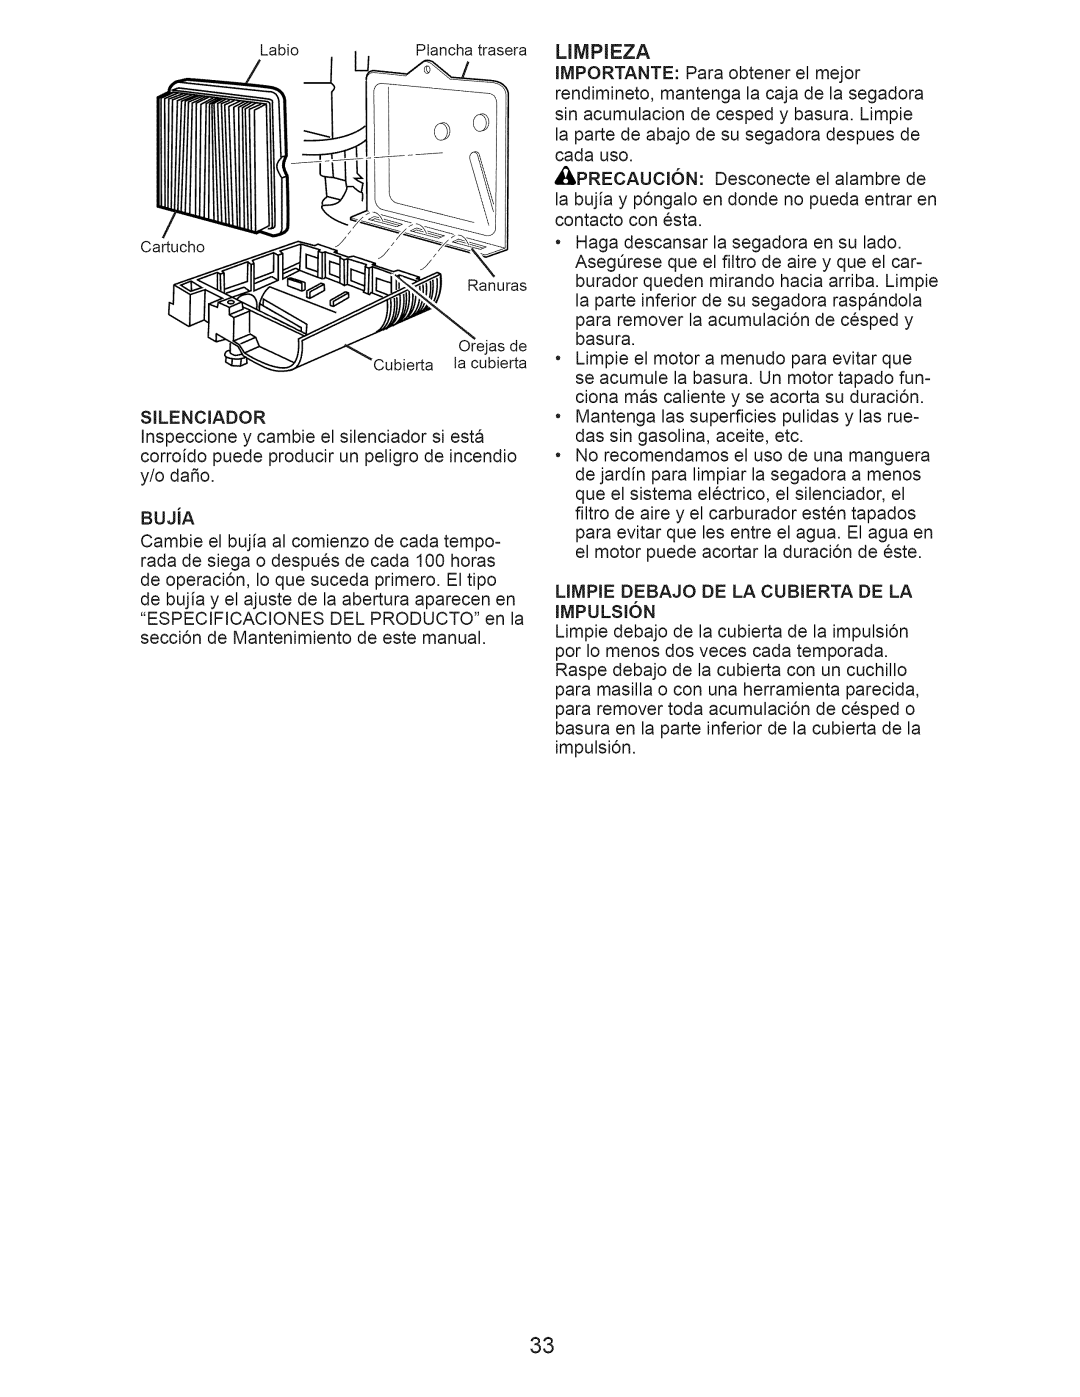 Craftsman 917.376392 manual Limpieza, LIMPIE DEBAJO DE LA CUBIERTA DE LA IMPULSI6N 